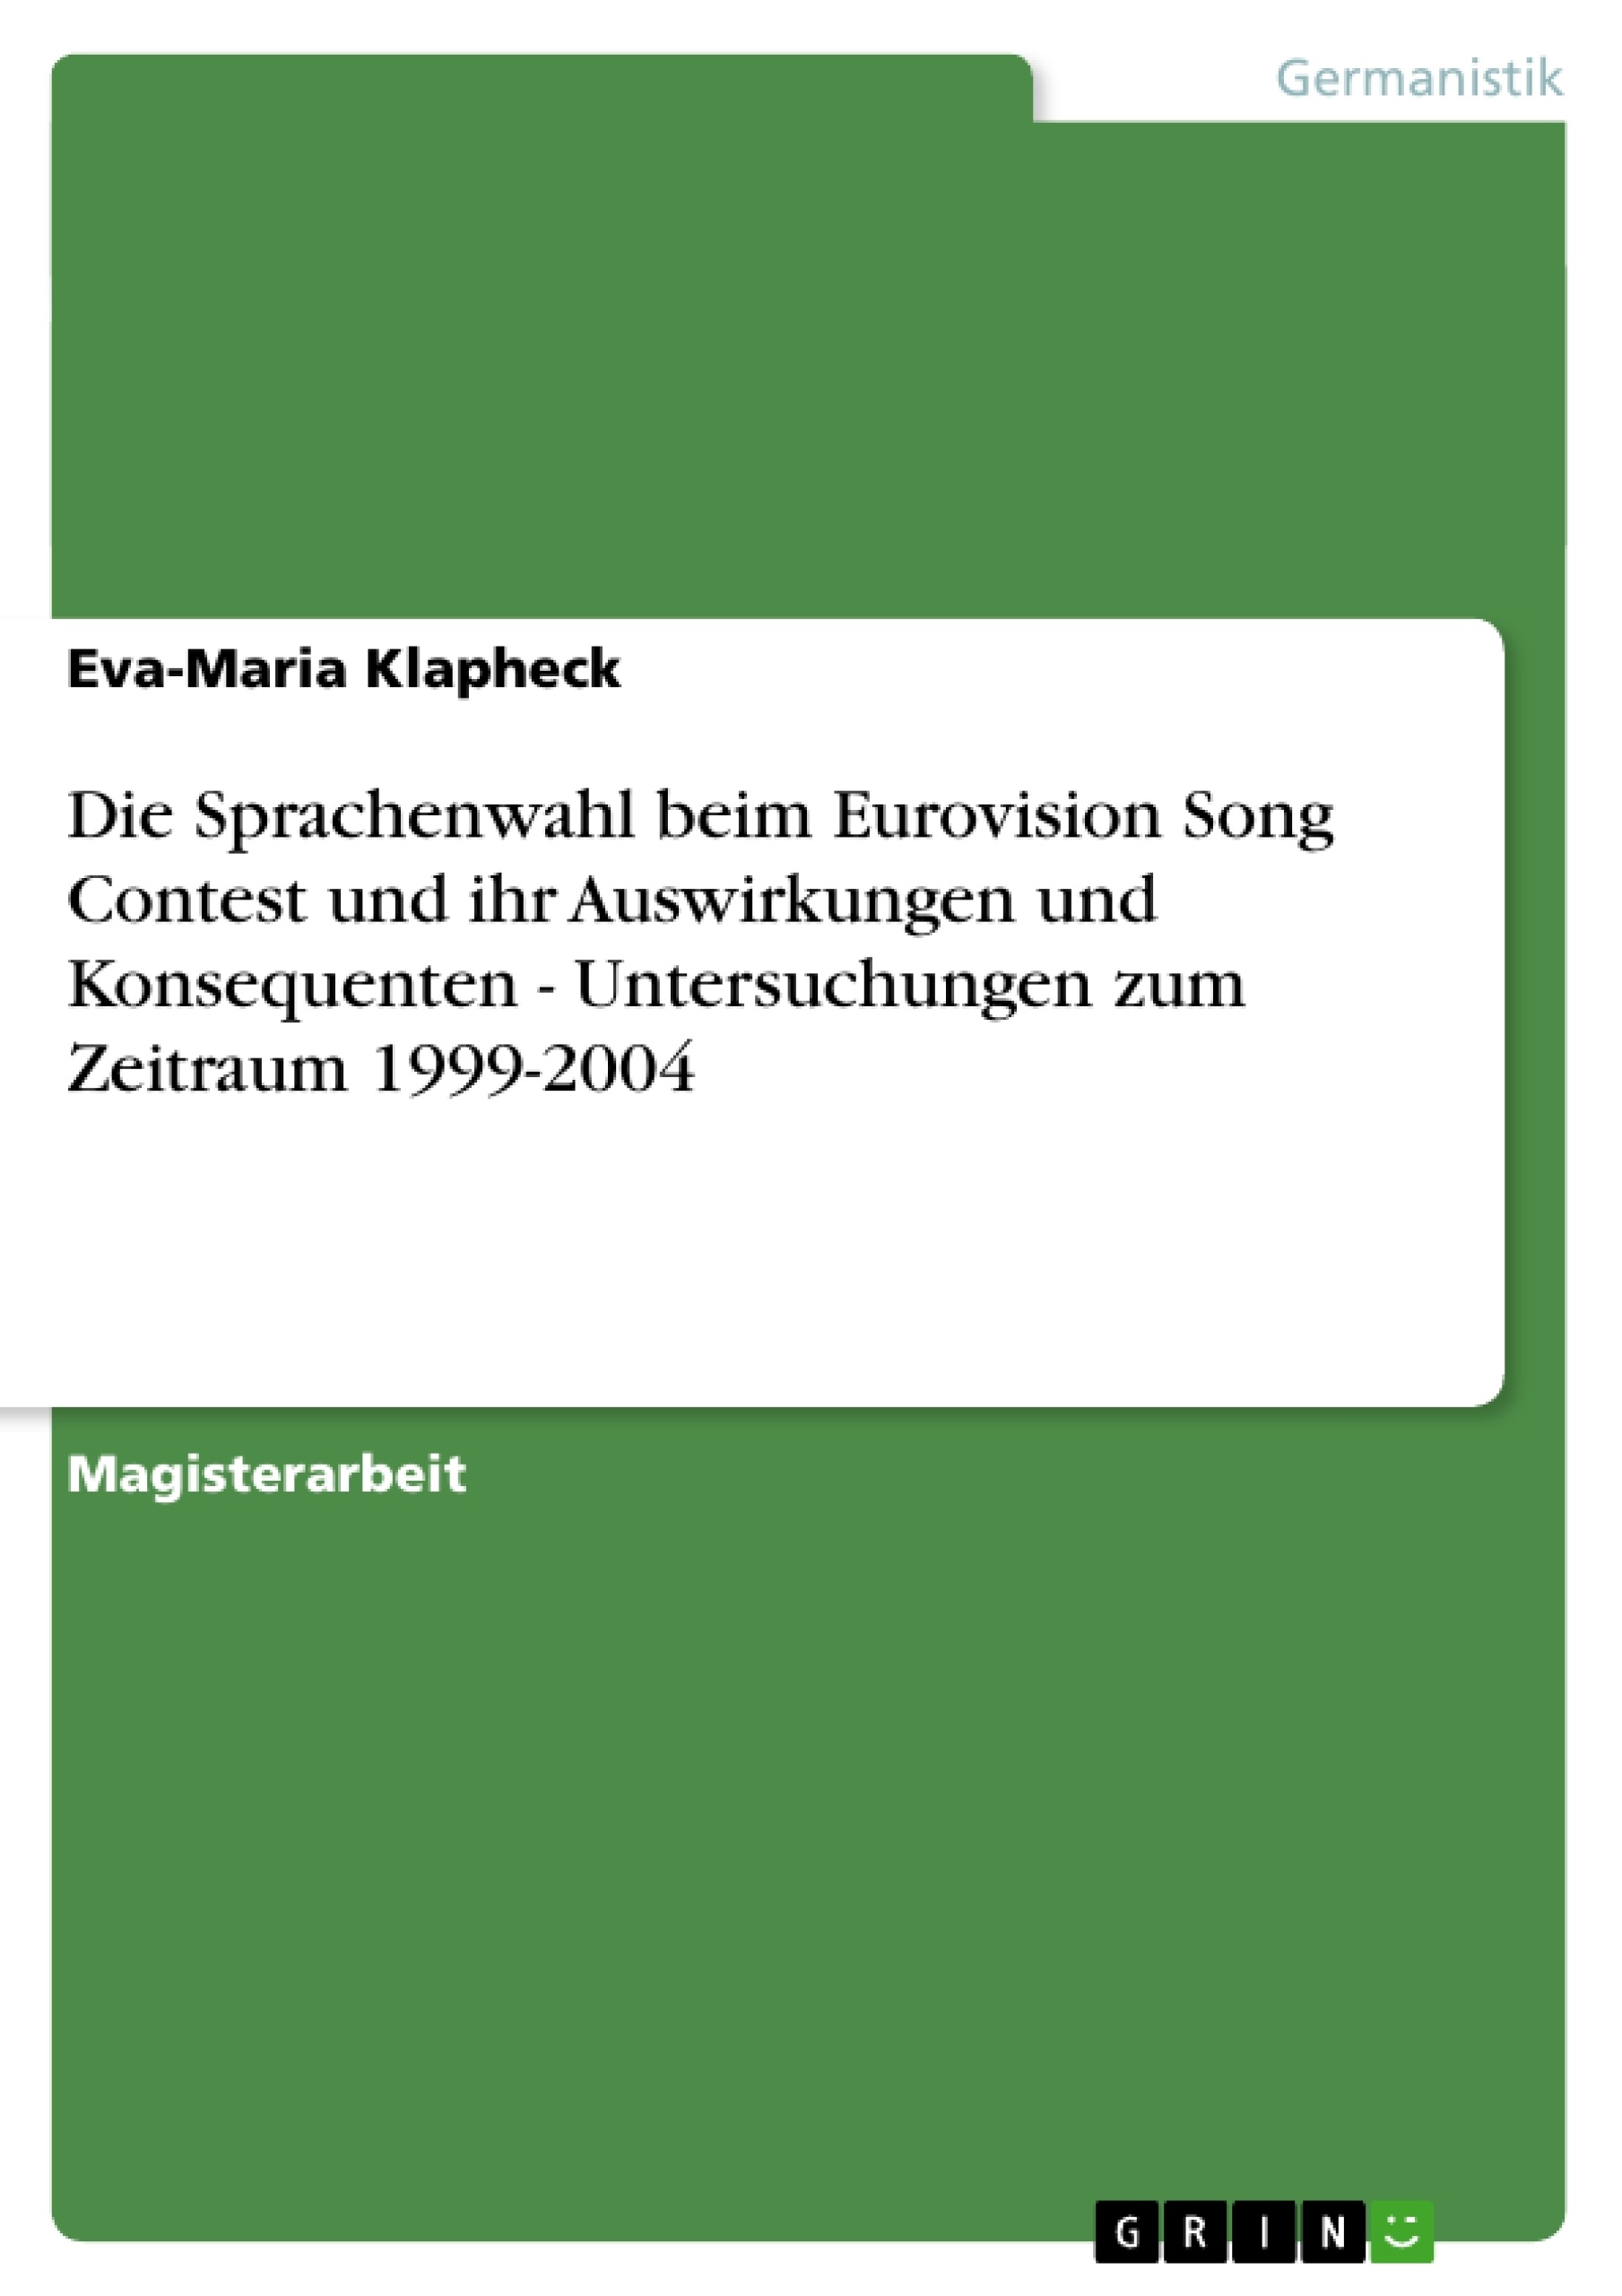 Título: Die Sprachenwahl beim Eurovision Song Contest und ihr Auswirkungen und Konsequenten - Untersuchungen zum Zeitraum 1999-2004